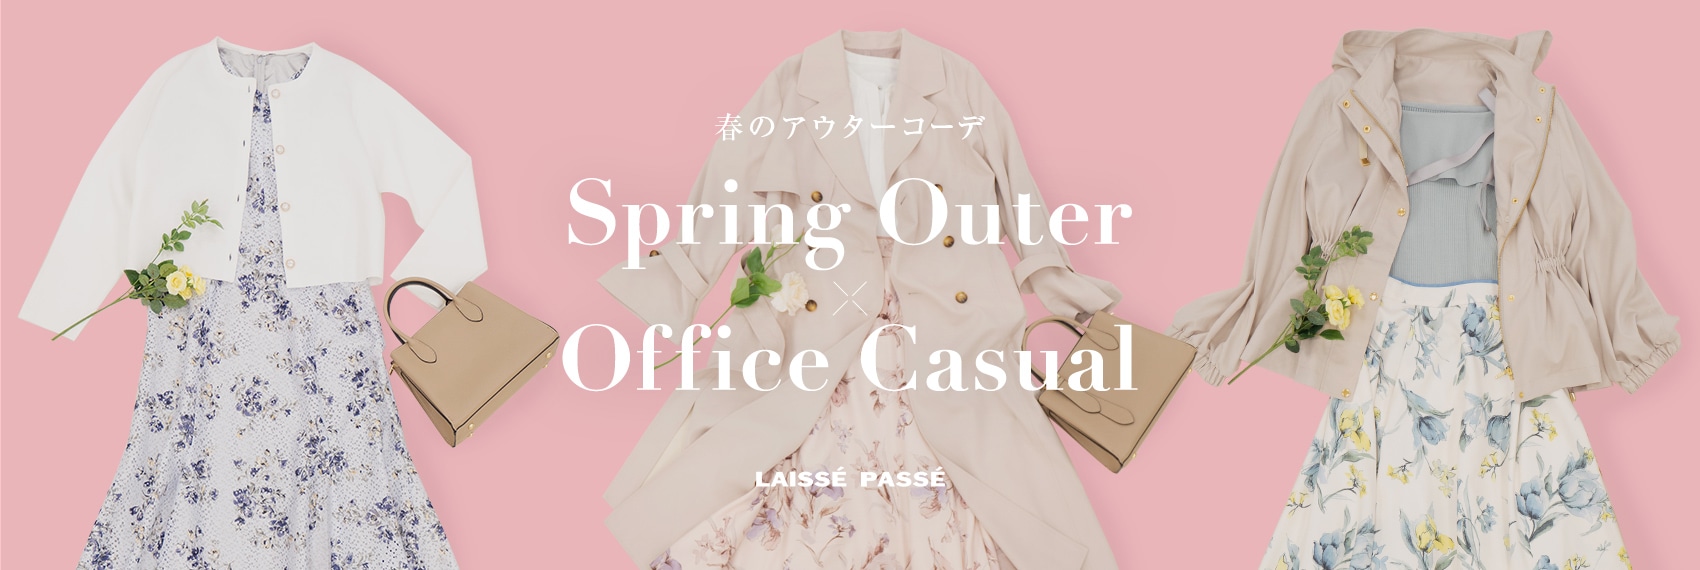 春のアウターコーデ Spring Outer×Office Casual LAISSE PASSE